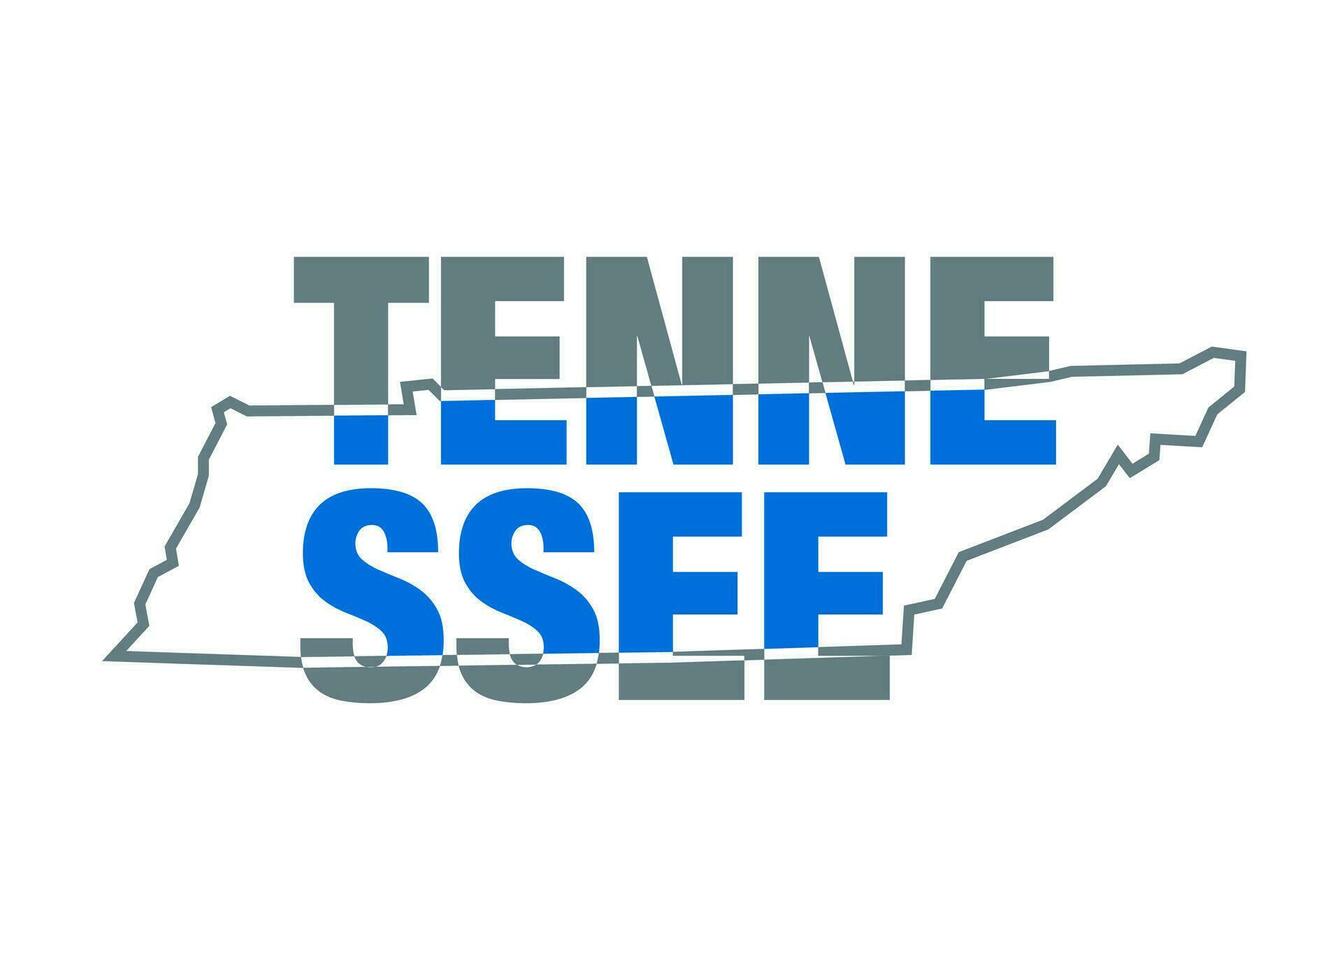 Tennessee carte typographie vecteur sur blanc couleur.